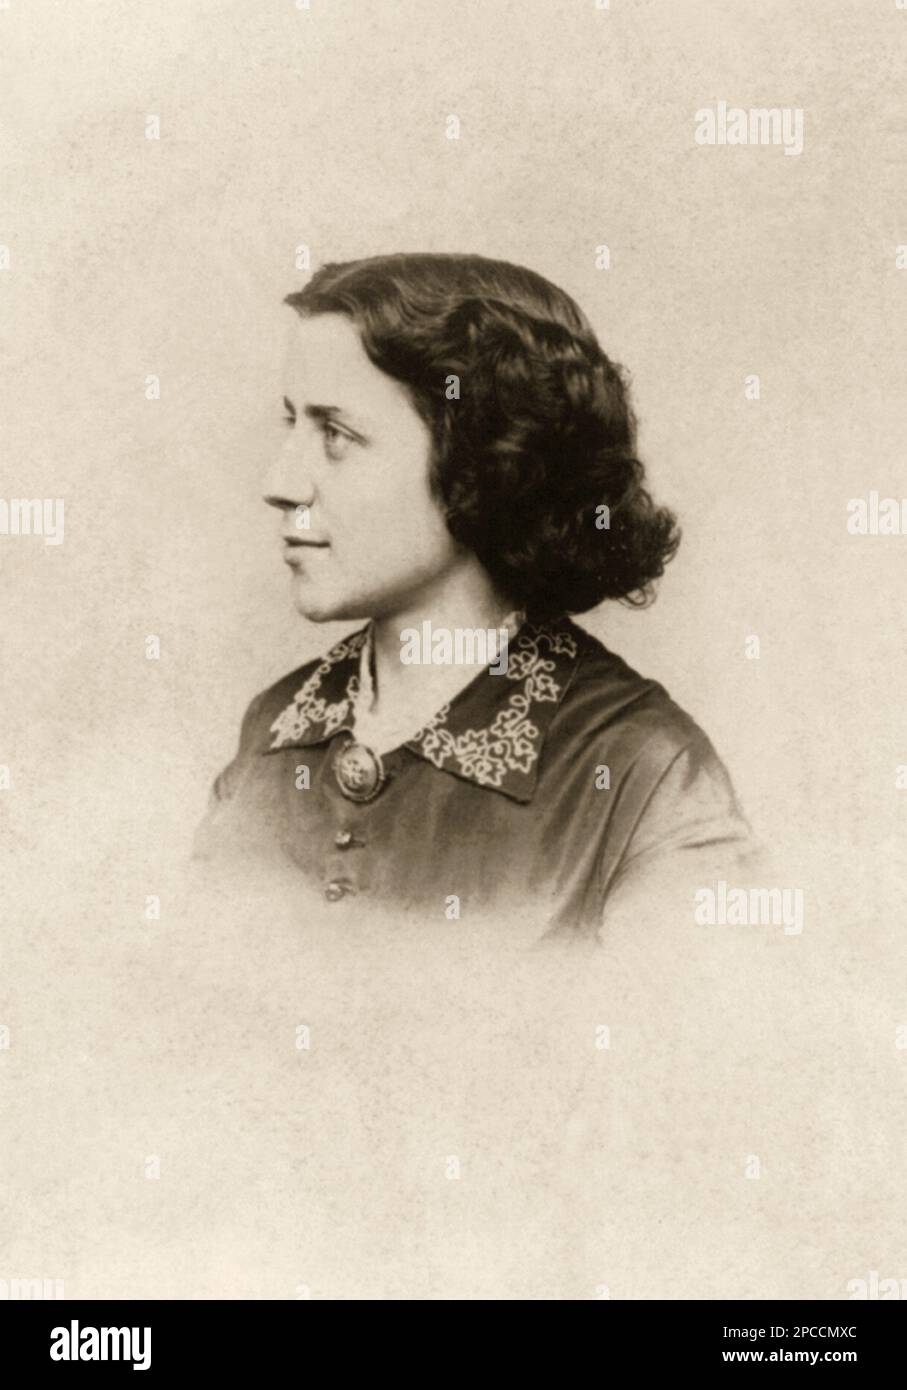 1861 ca , USA : The social reformer activist and leading figure of the early woman's movement  ANNA ELIZABETH DICKINSON ( 1842 - 1932 ). Photo by J.W. Hurn , Philadelphia   - SUFFRAGETTA - sufraggetta - Sufragist - POLITICO - POLITICIAN - POLITICA - POLITIC - FEMMINISMO - FEMMINISTA  - FEMMINISTE - SUFFRAGETTE - USA - ritratto - portrait  - FEMMINISM - FEMMINIST - SUFFRAGIO UNIVERSALE - VOTO POLITICO ALLE DONNE - FASHION - MODA  - OTTOCENTO - 800's - '800 - pin - spilla - lace - pizzo - profilo - profile ----  Archivio GBB Stock Photo